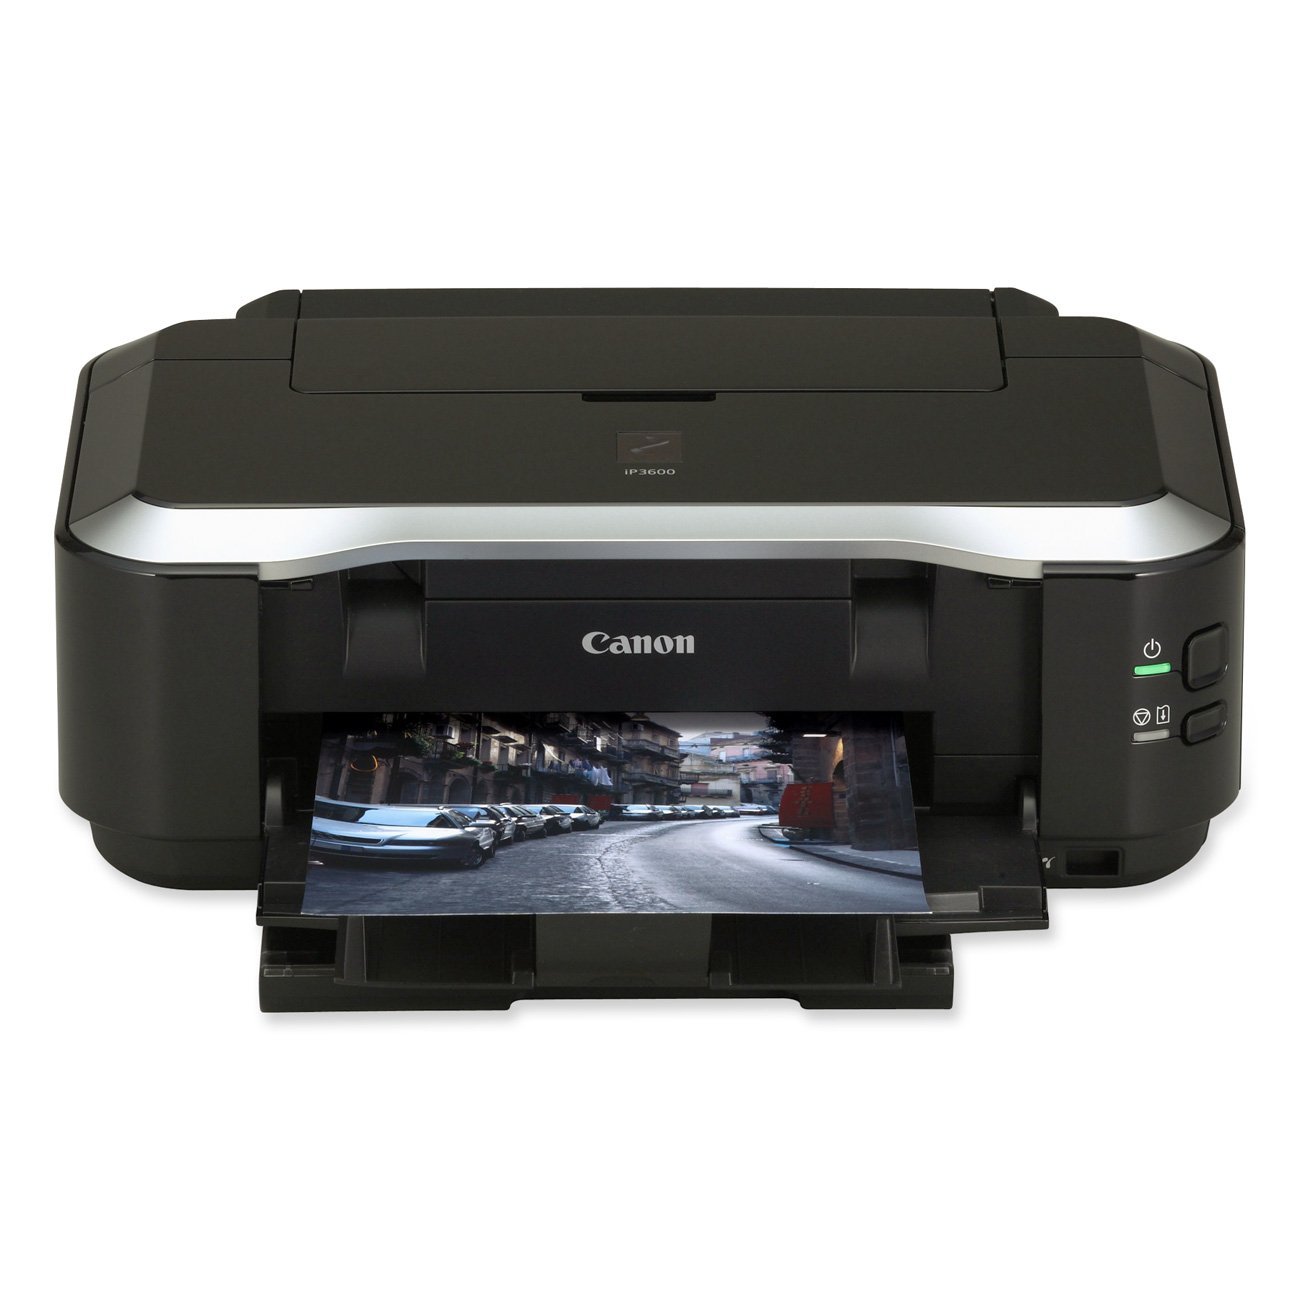 Скачать бесплатно драйвера для принтера canon ip3600